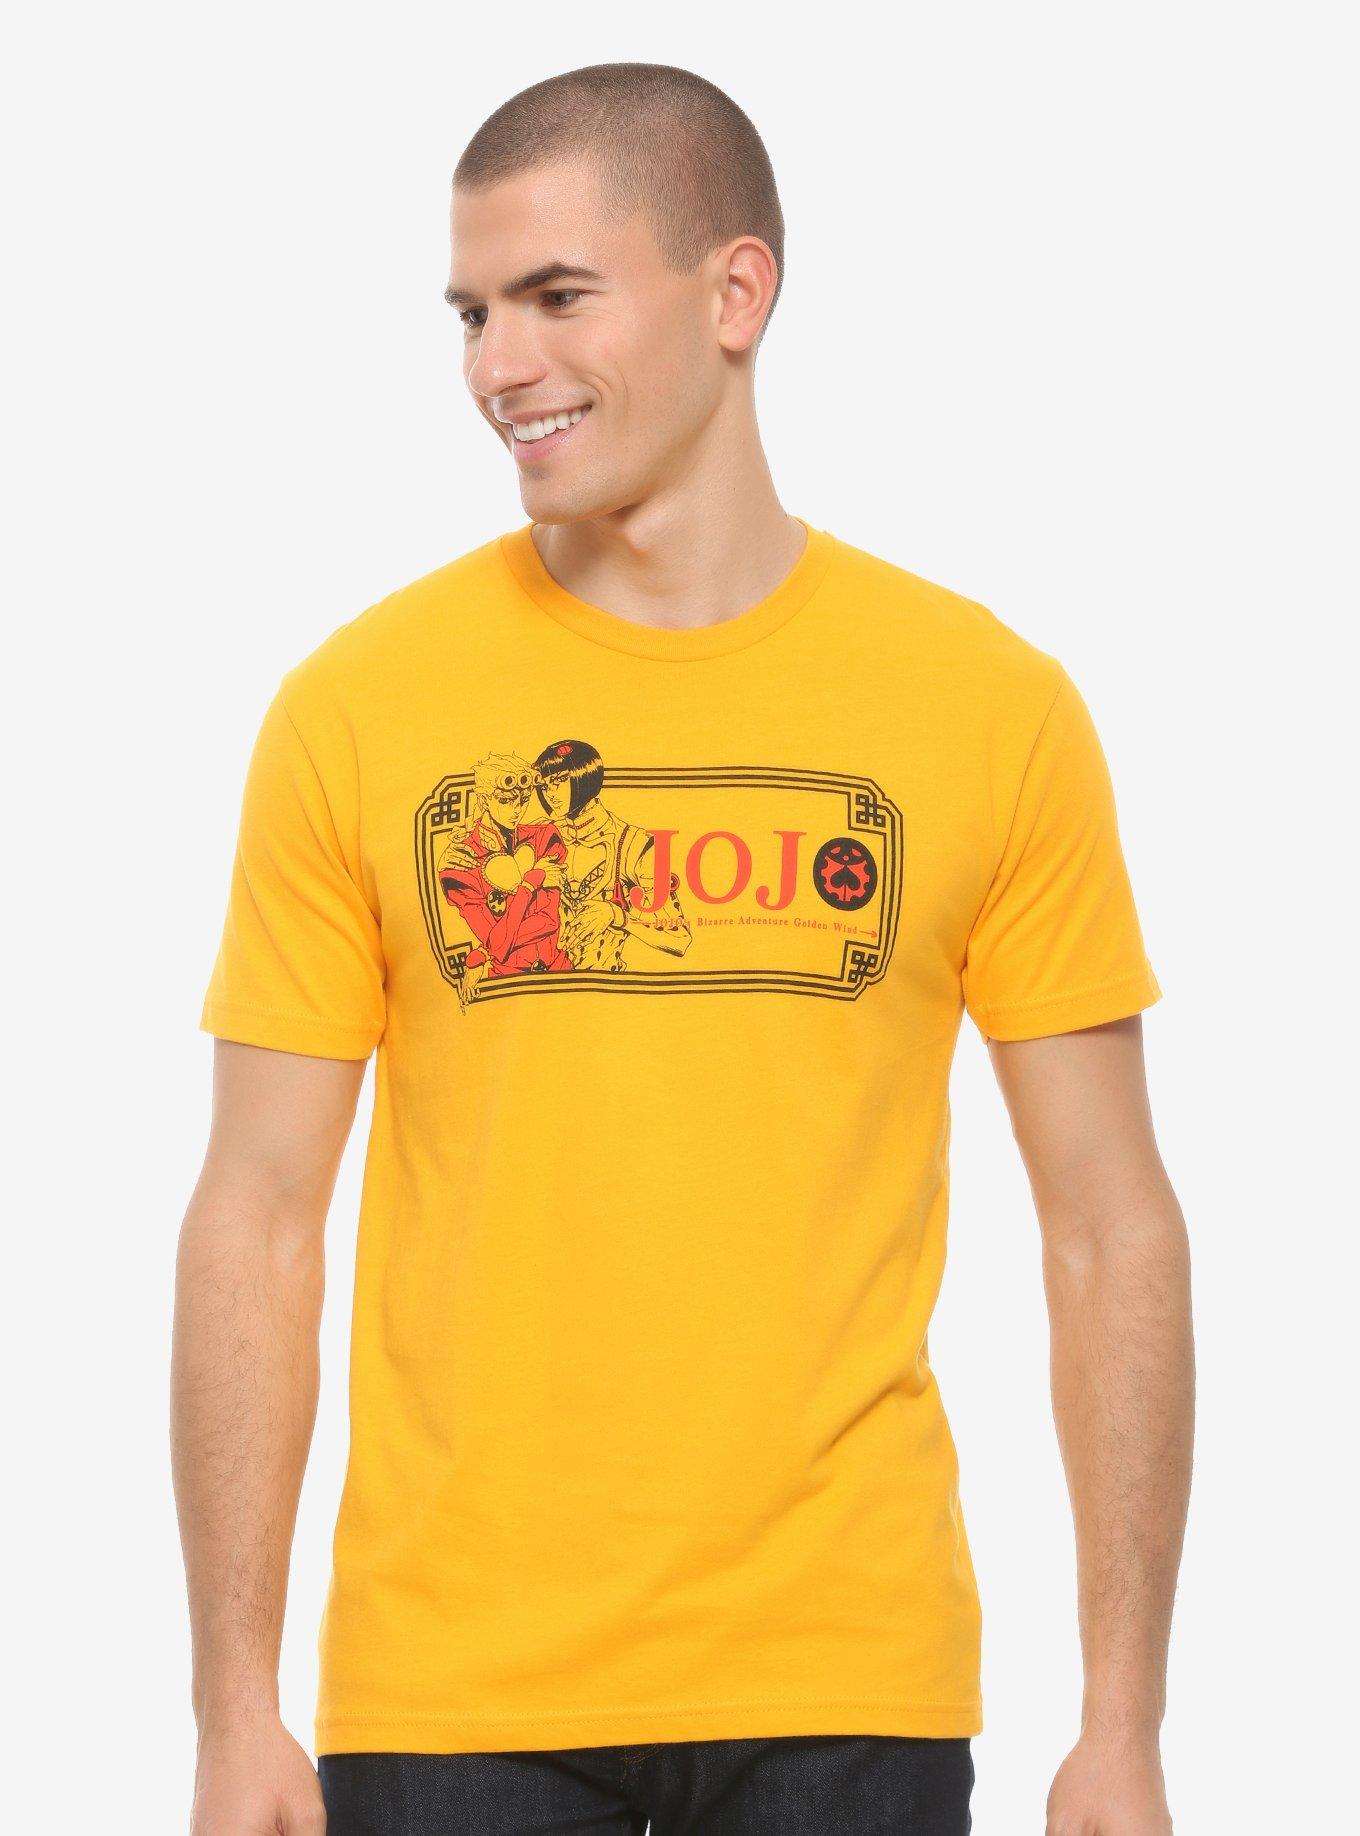 JoJo's Bizarre Adventure: Golden Wind Logo T-Shirt - BoxLunch Exclusive, BLACK, hi-res